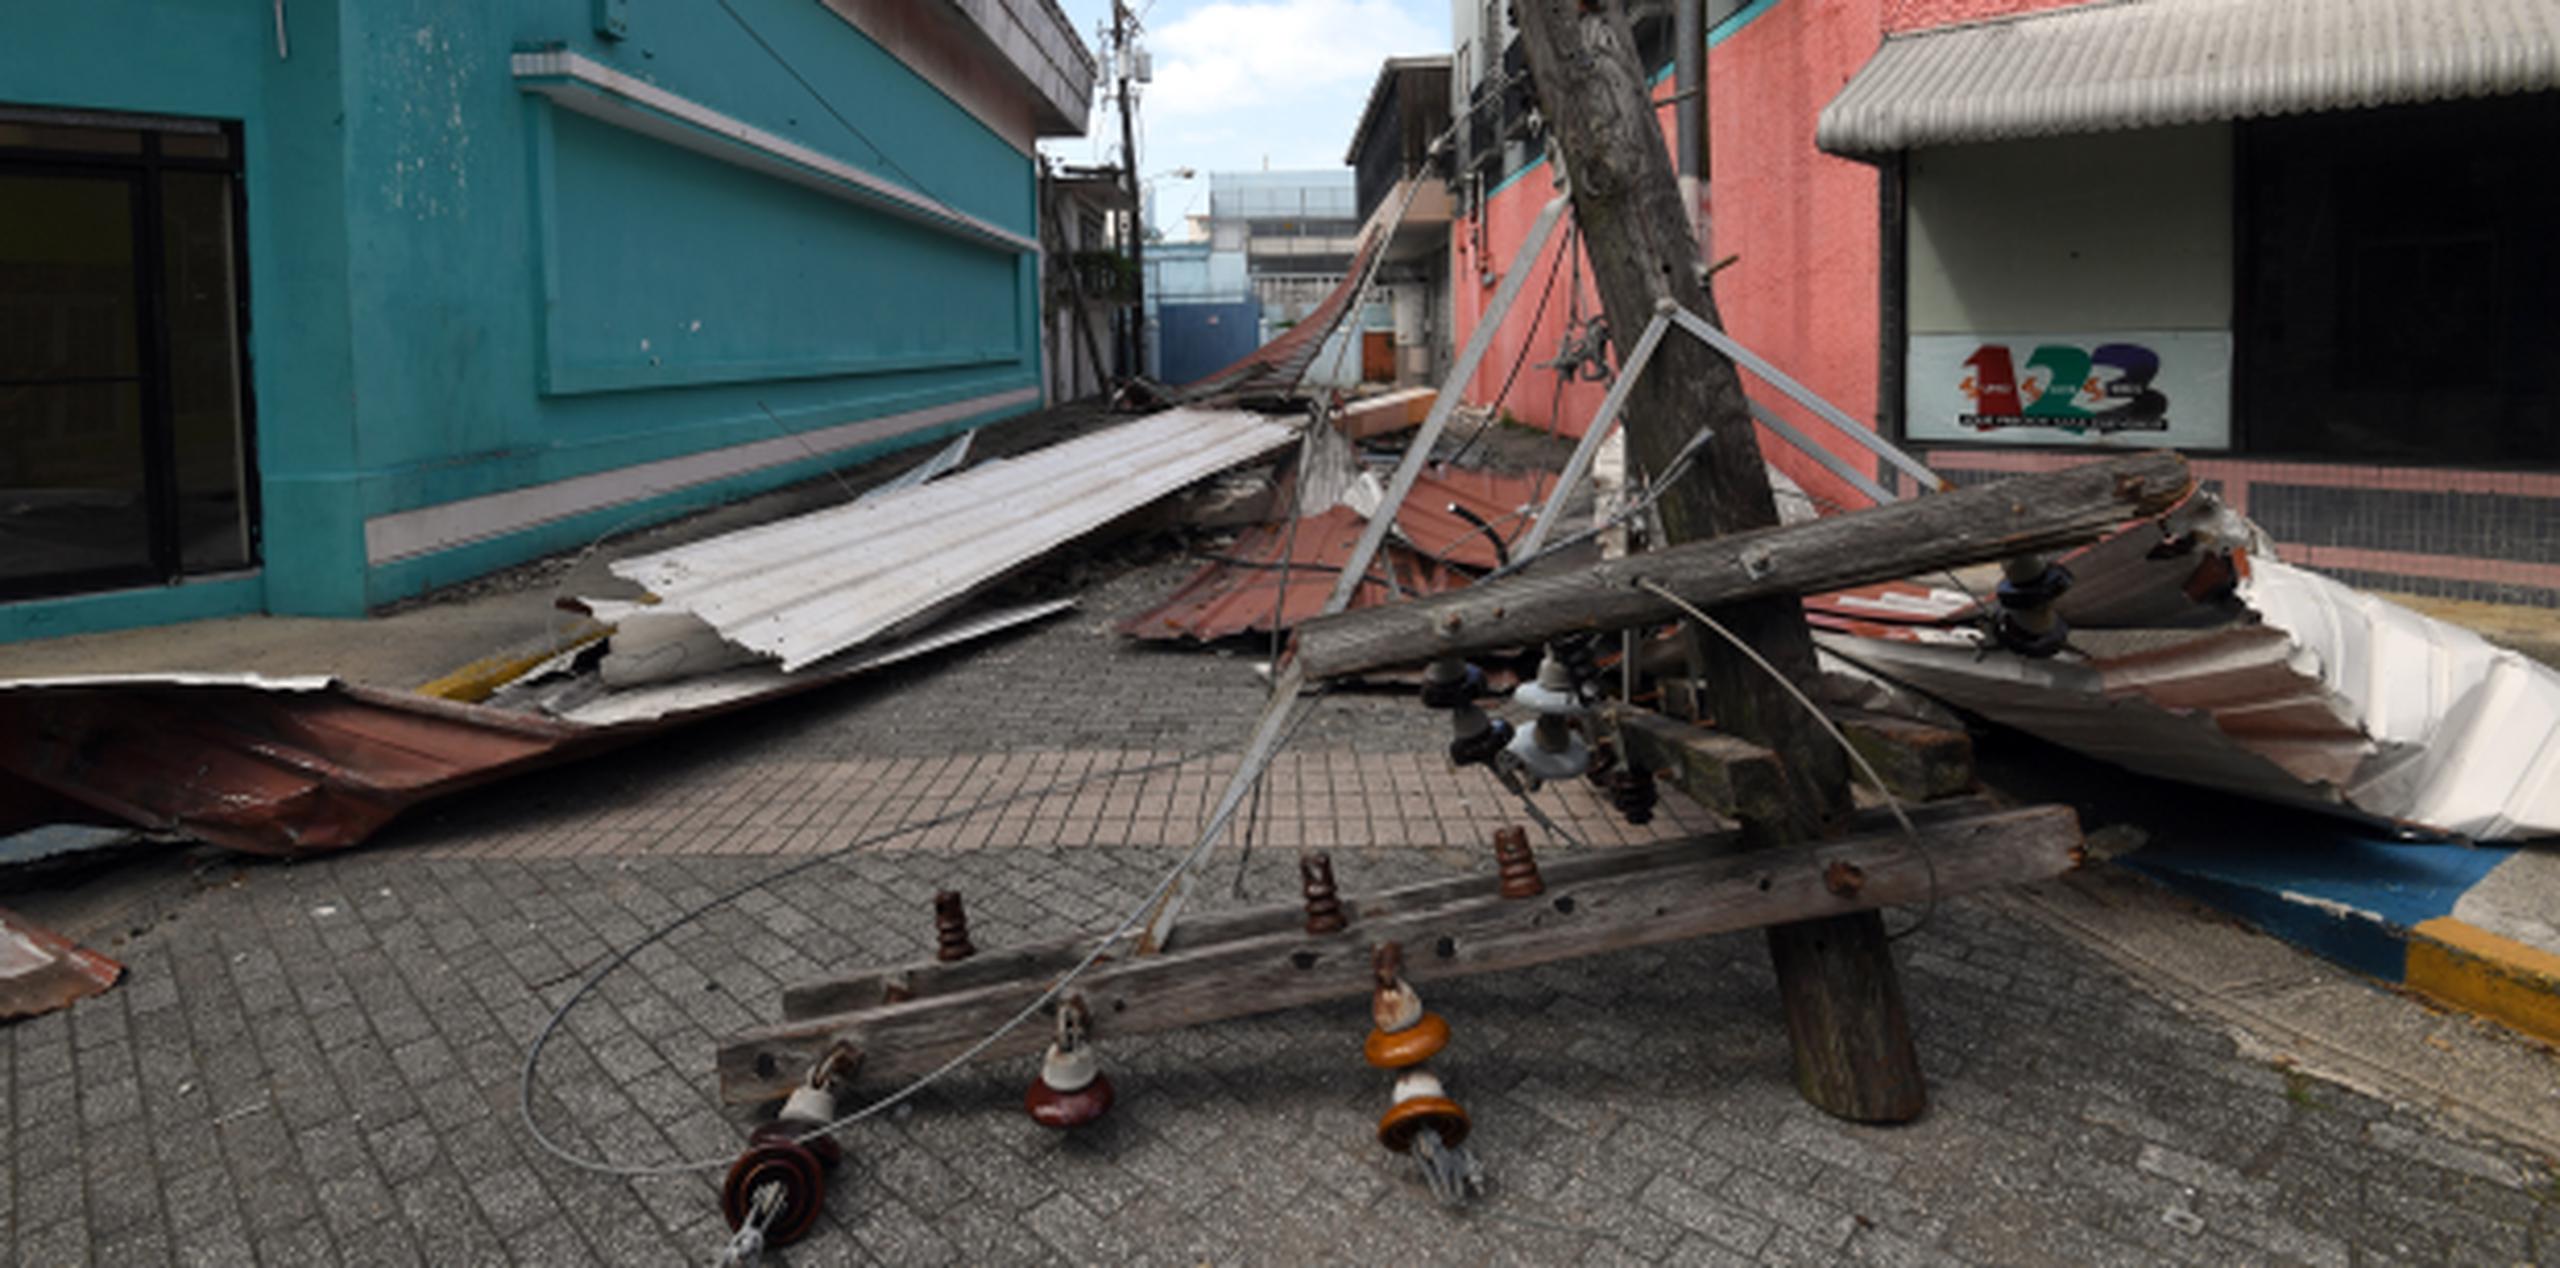 Aún queda gran parte del tendido eléctrico literalmente en el piso, como este poste en Manatí, pero Santos tiene cálculos más optimistas que otros que han surgido sobre la recuperación de AEE. (andre.kang@gfrmedia.com)